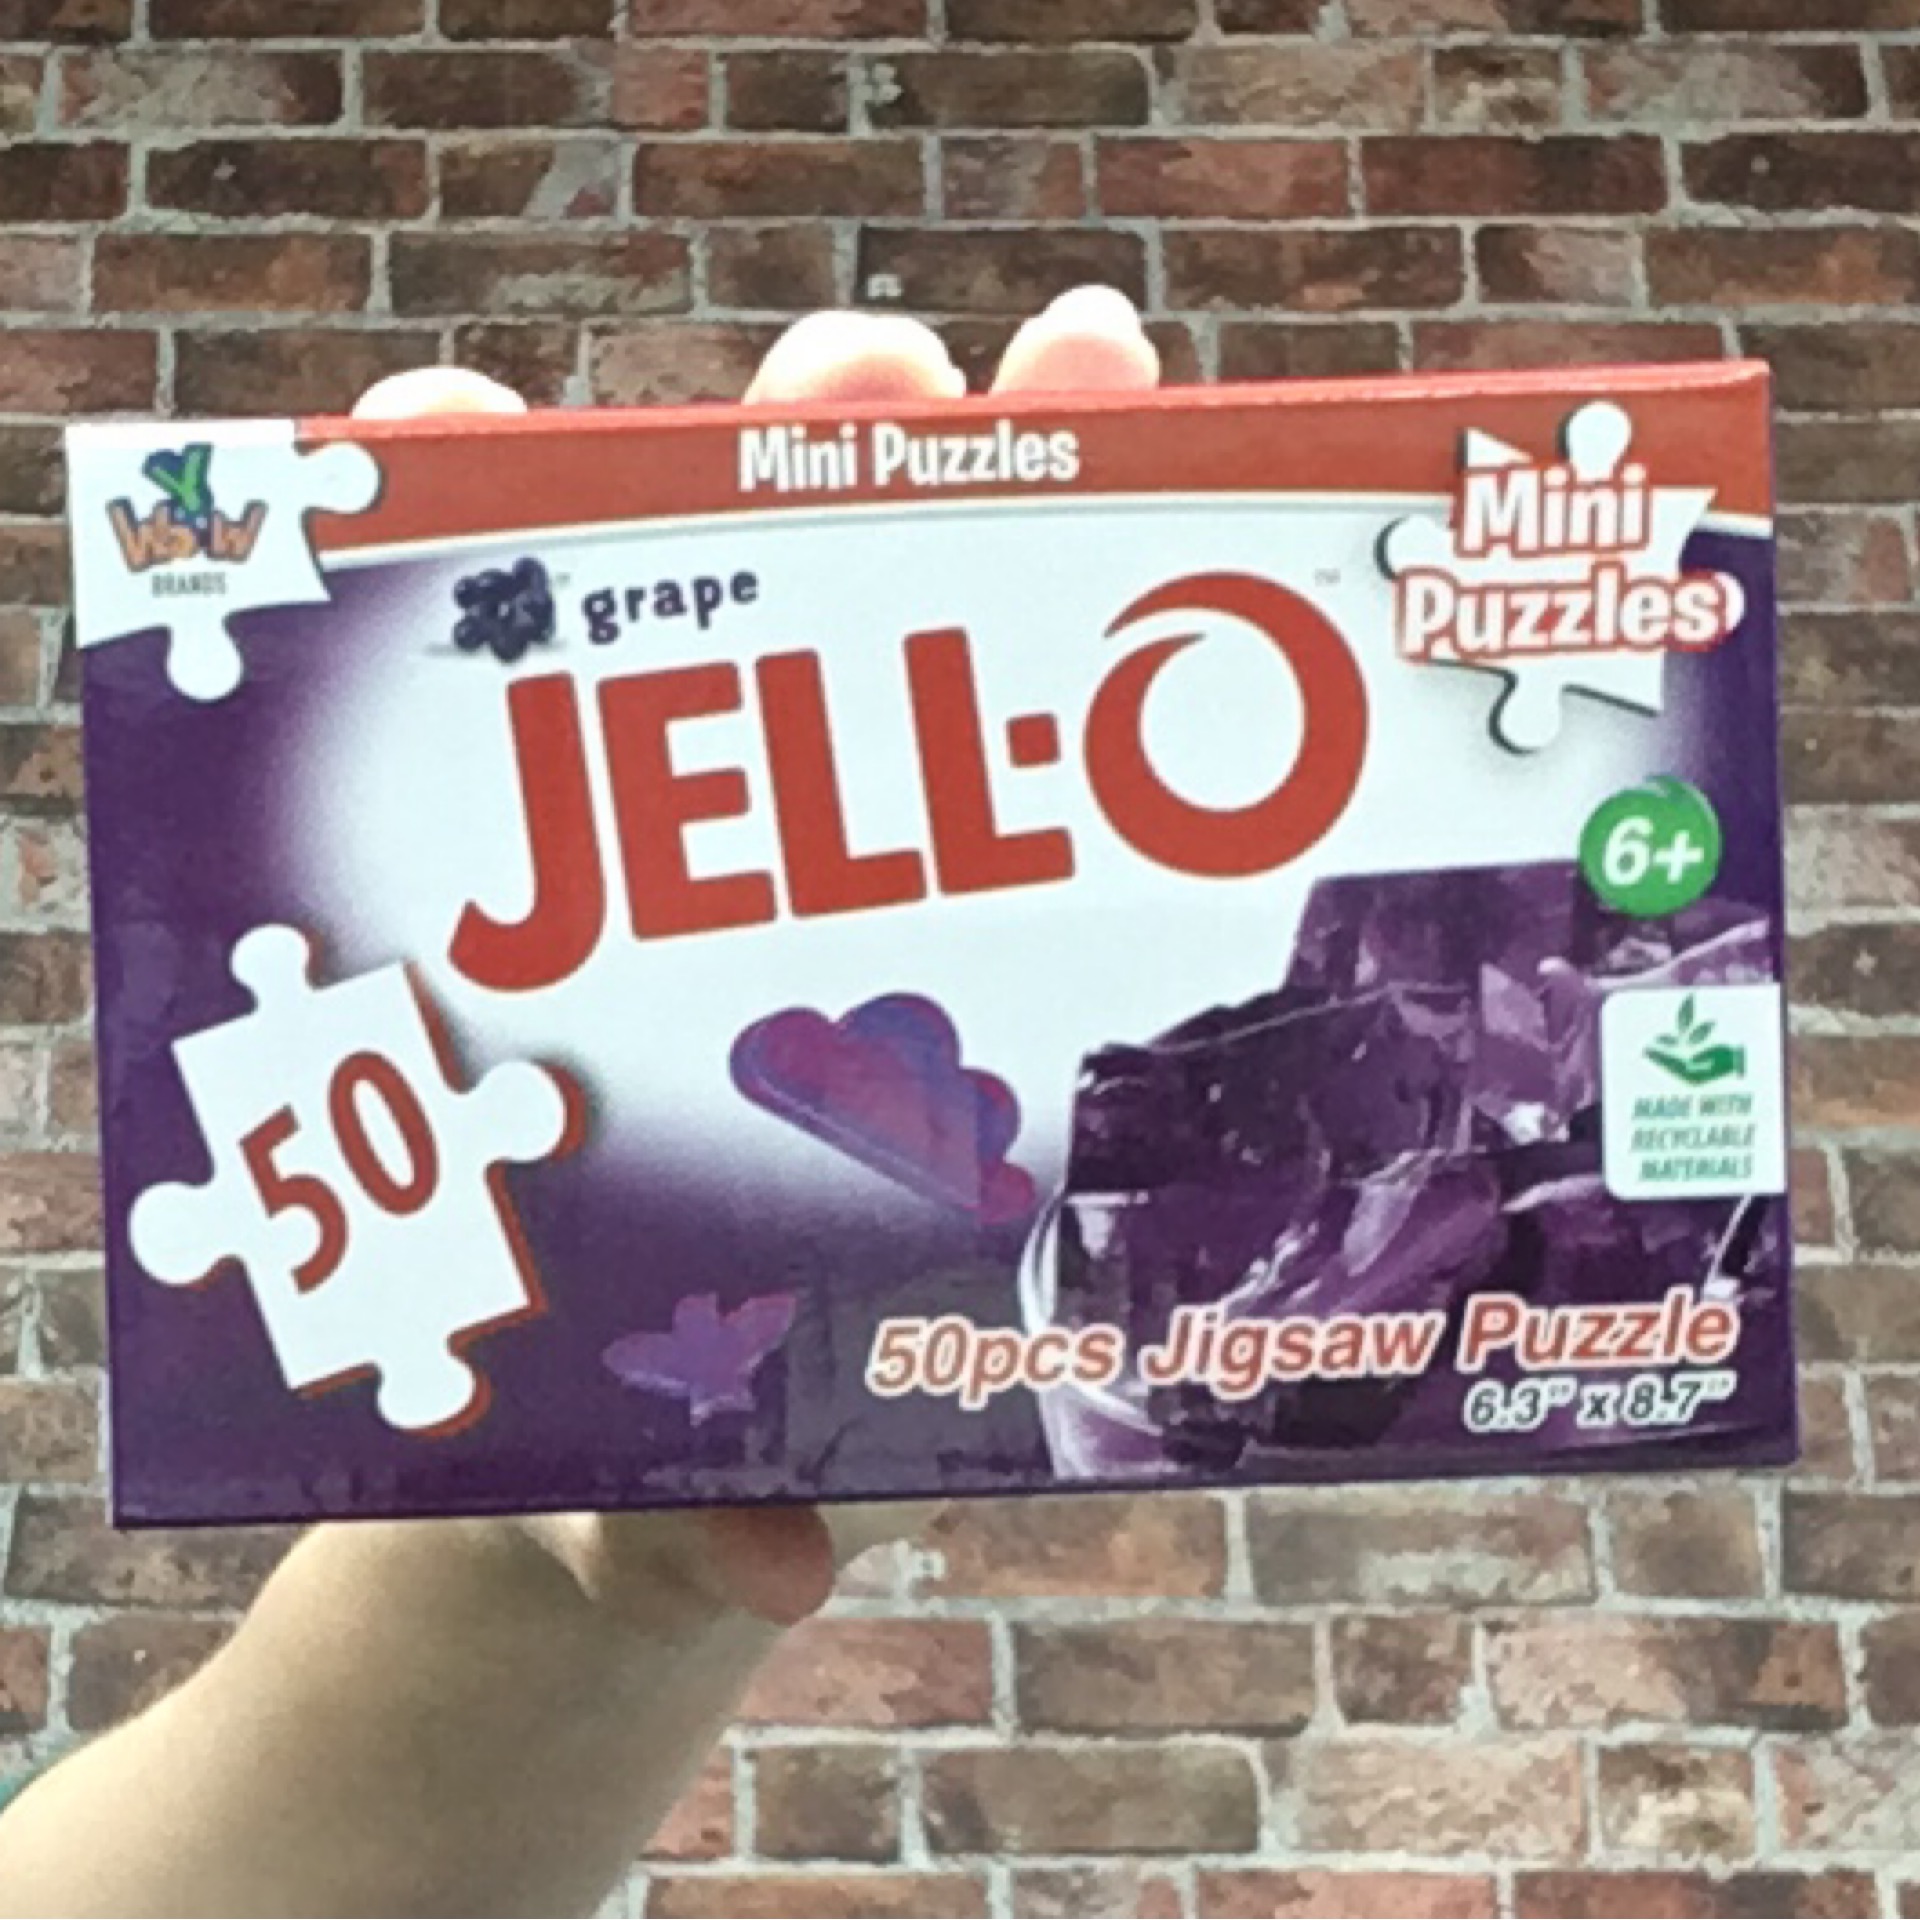 Mini Jello